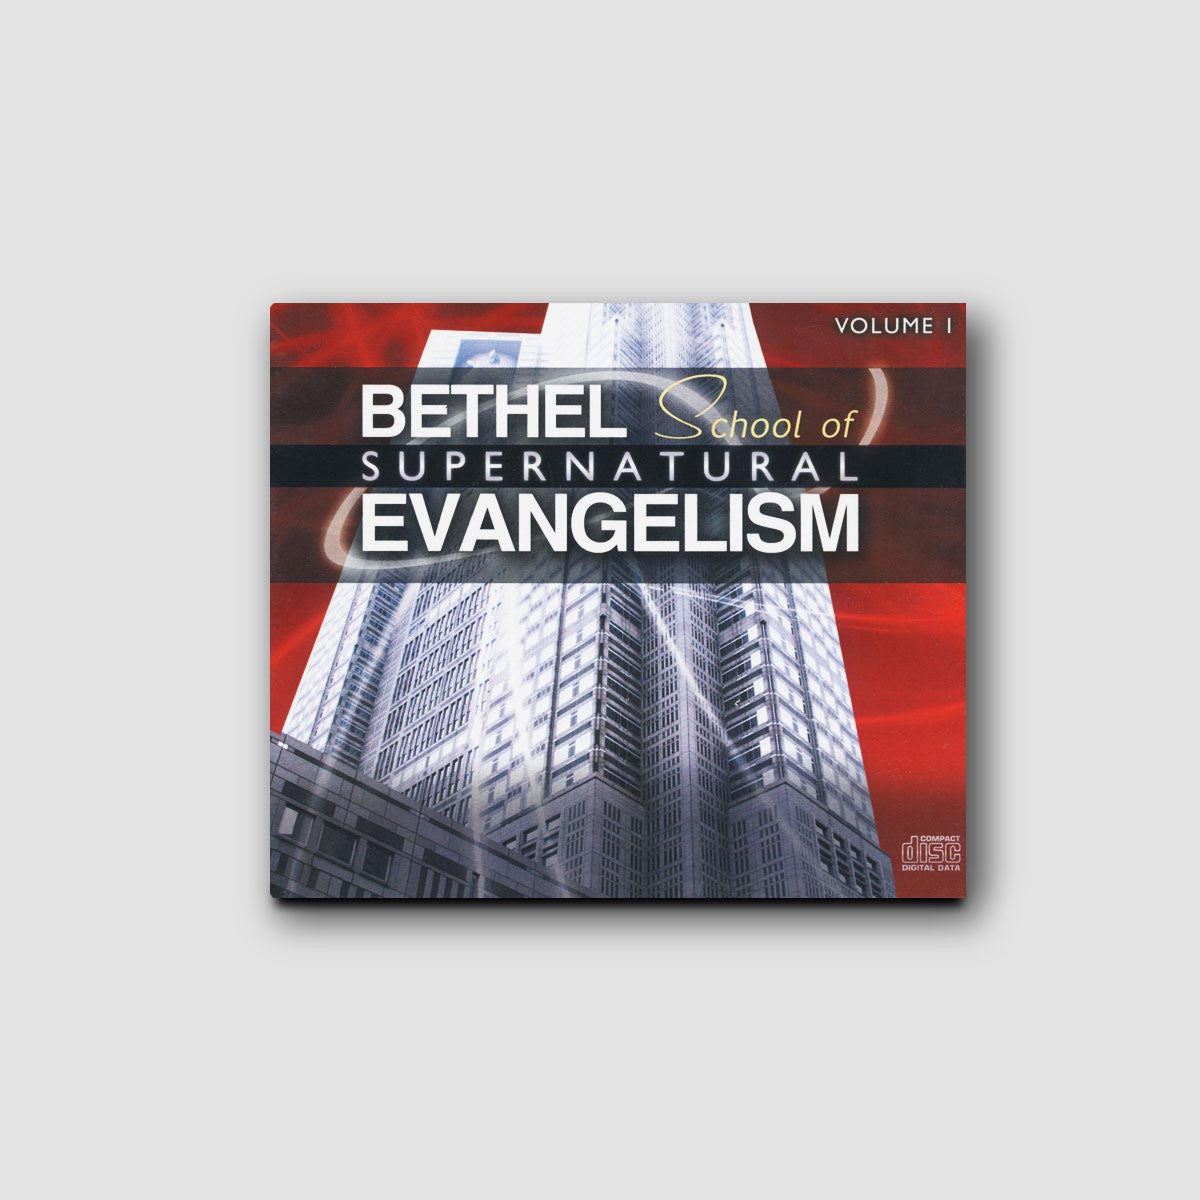 Bethel School of Supernatural Evangelism